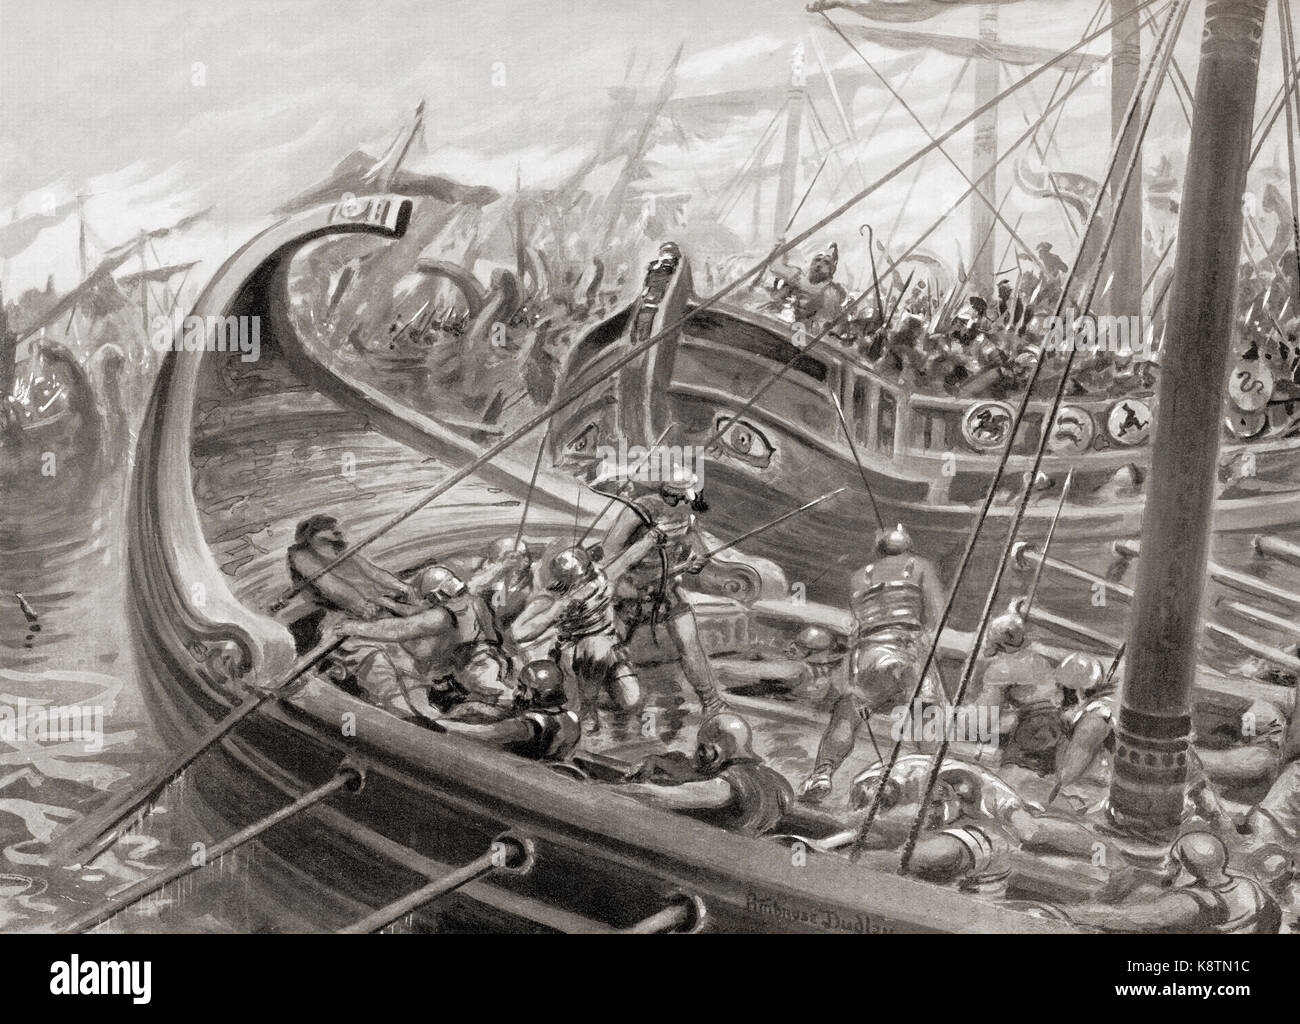 Los colonos griegos phocaean chocan en el mar con los cartagineses y etruscos en la batalla naval de alalia, c. 536 A.C. después de la pintura por Ambrosio Dudley, (1867-1951). A partir de la historia de Hutchinson de las naciones, publicado en 1915. Foto de stock